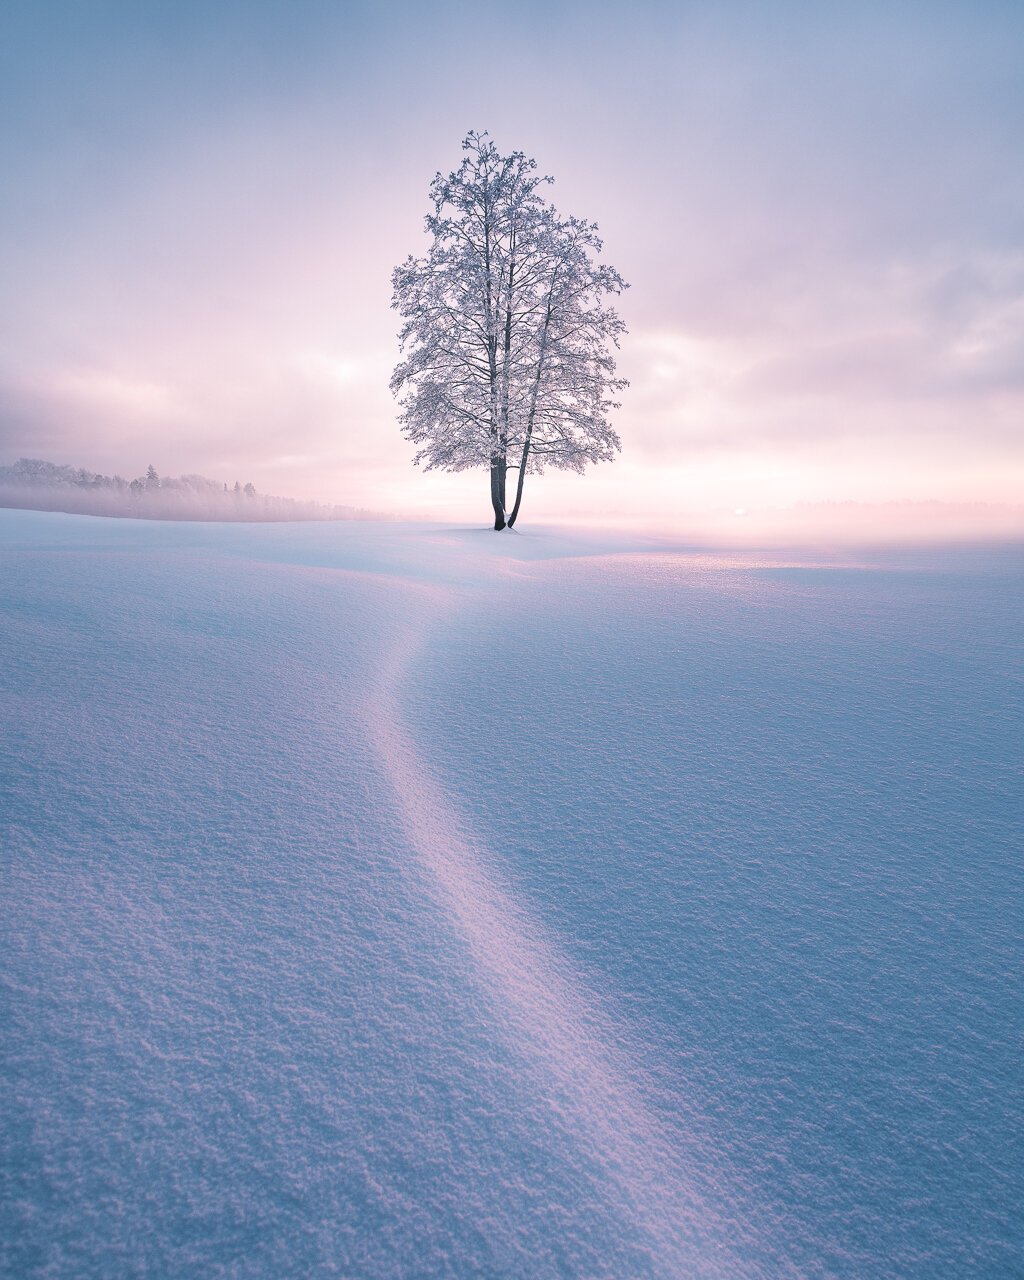 Mikko-Lagerstedt-Winter-Evening.jpg